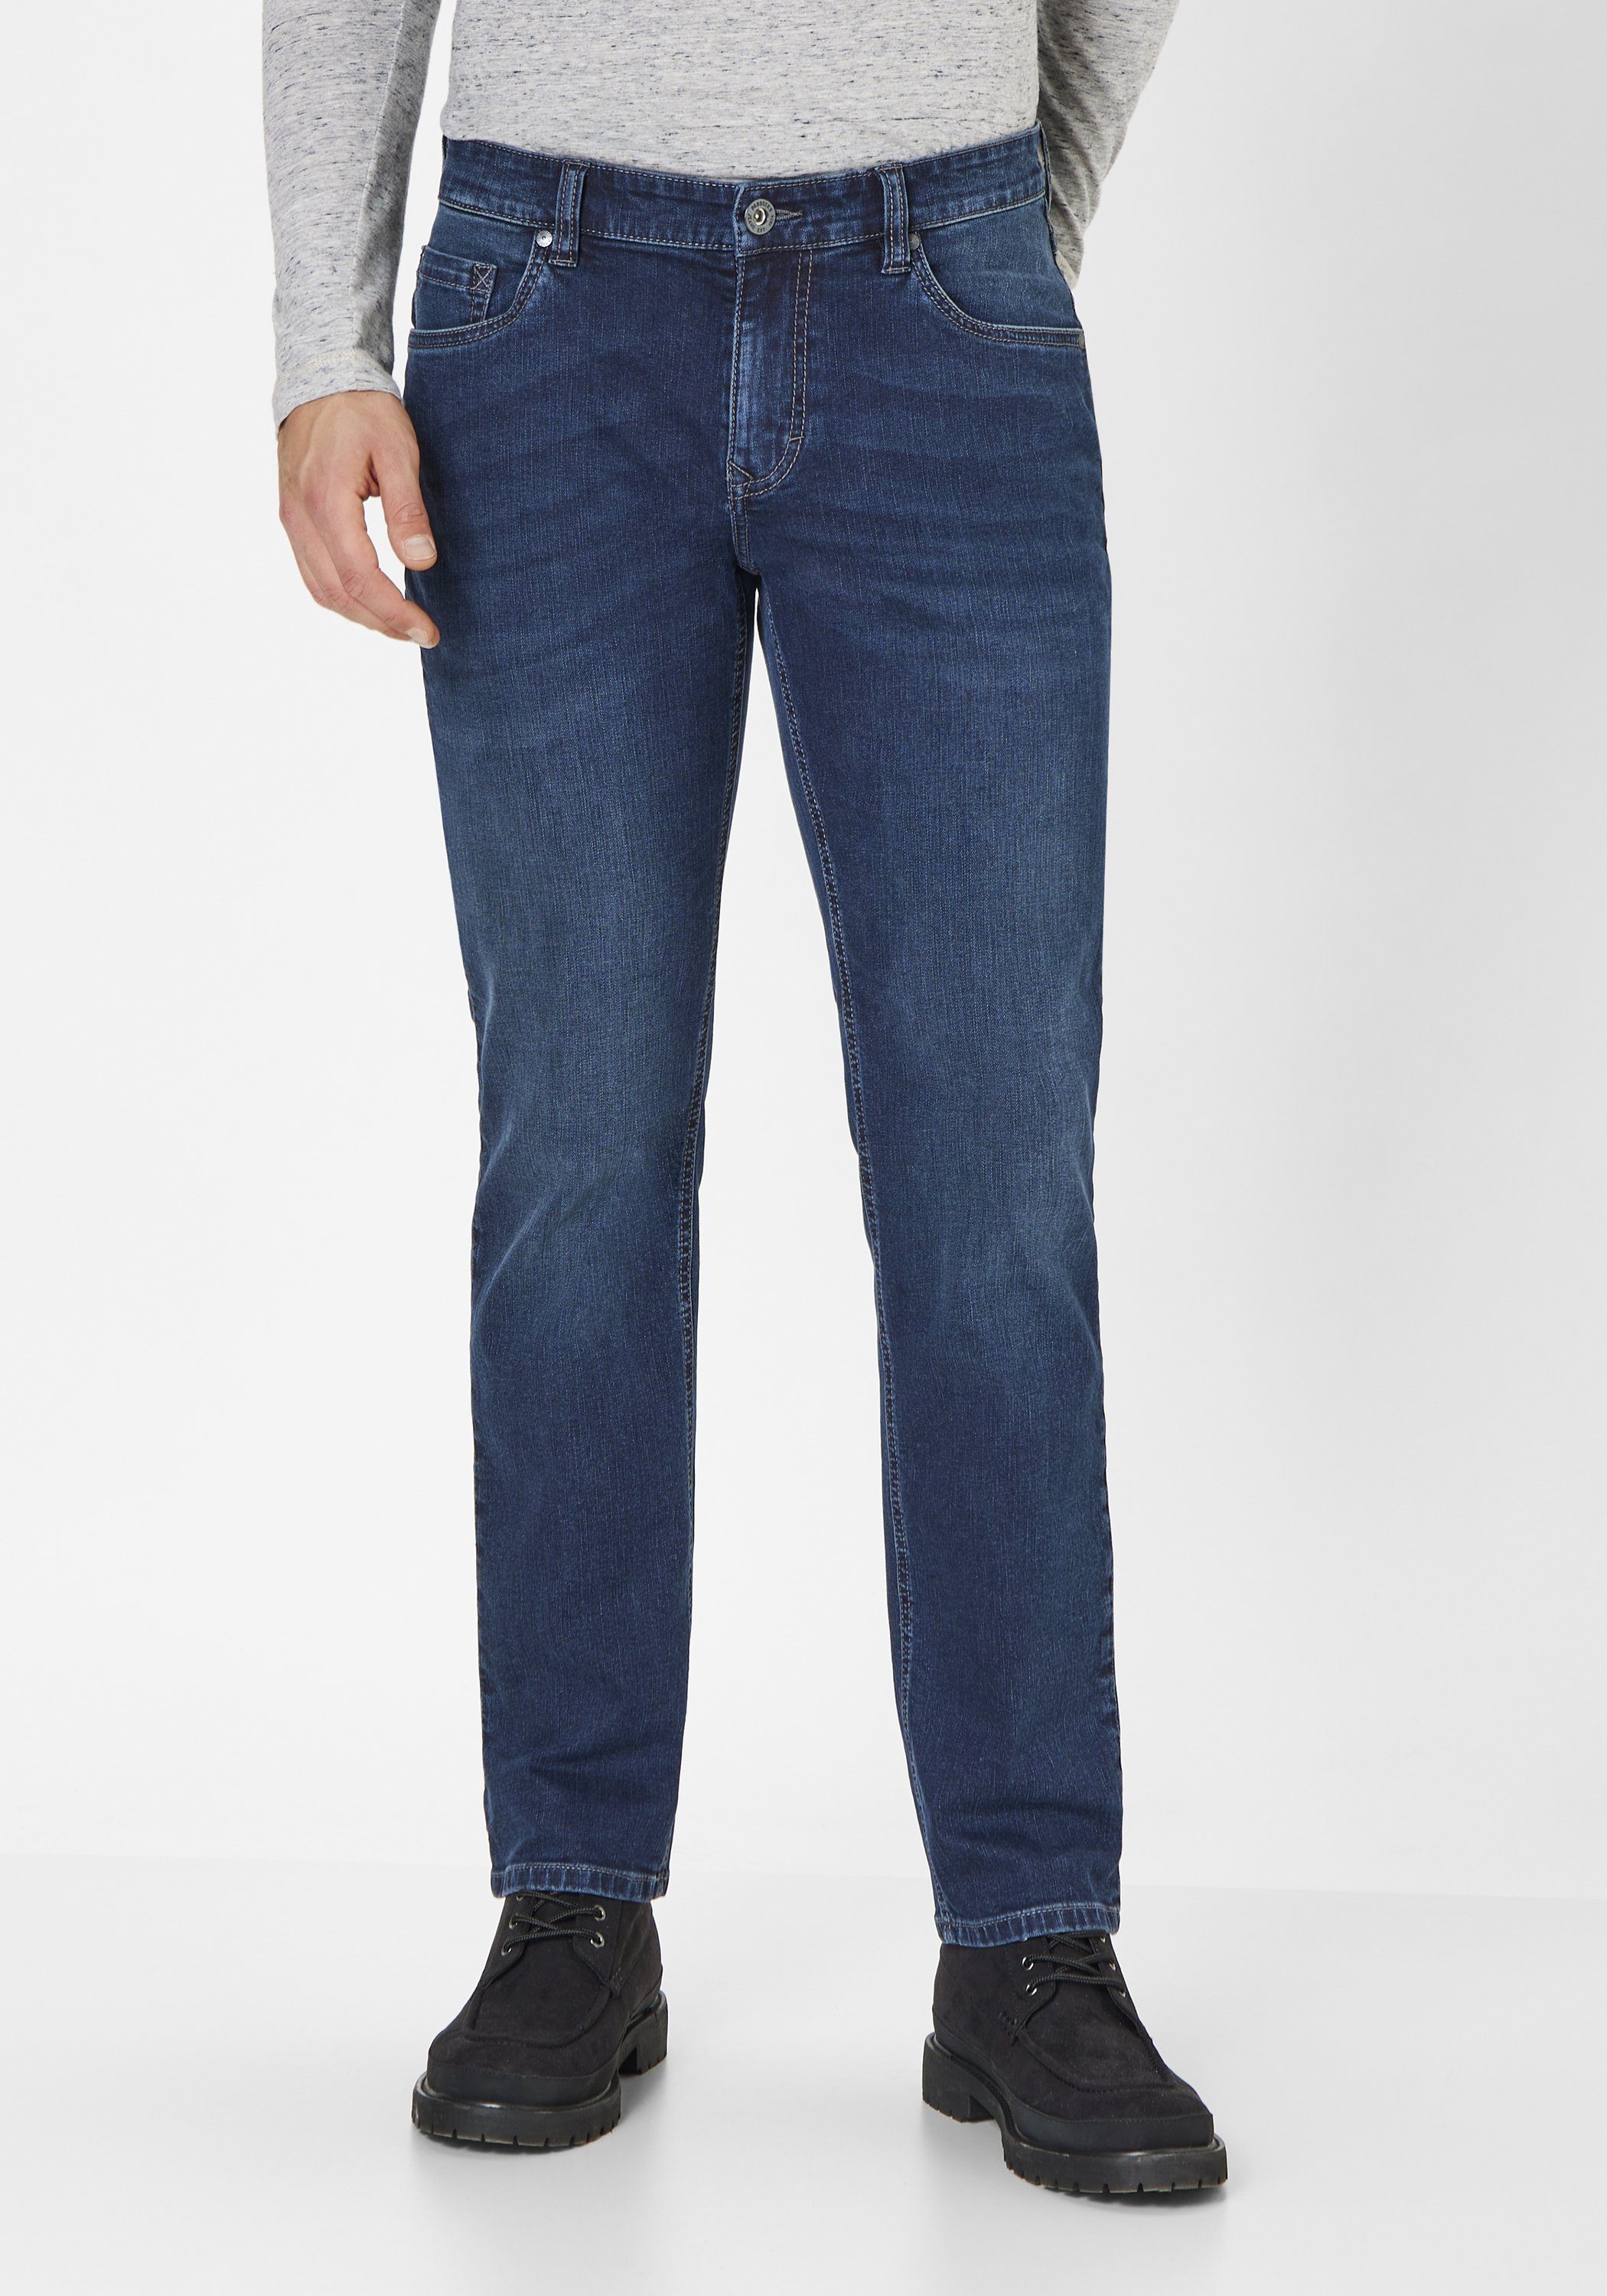 vintage Regular-fit-Jeans dark Straight-Fit wash Paddock's blue Jeans Regular 5-Pocket BEN